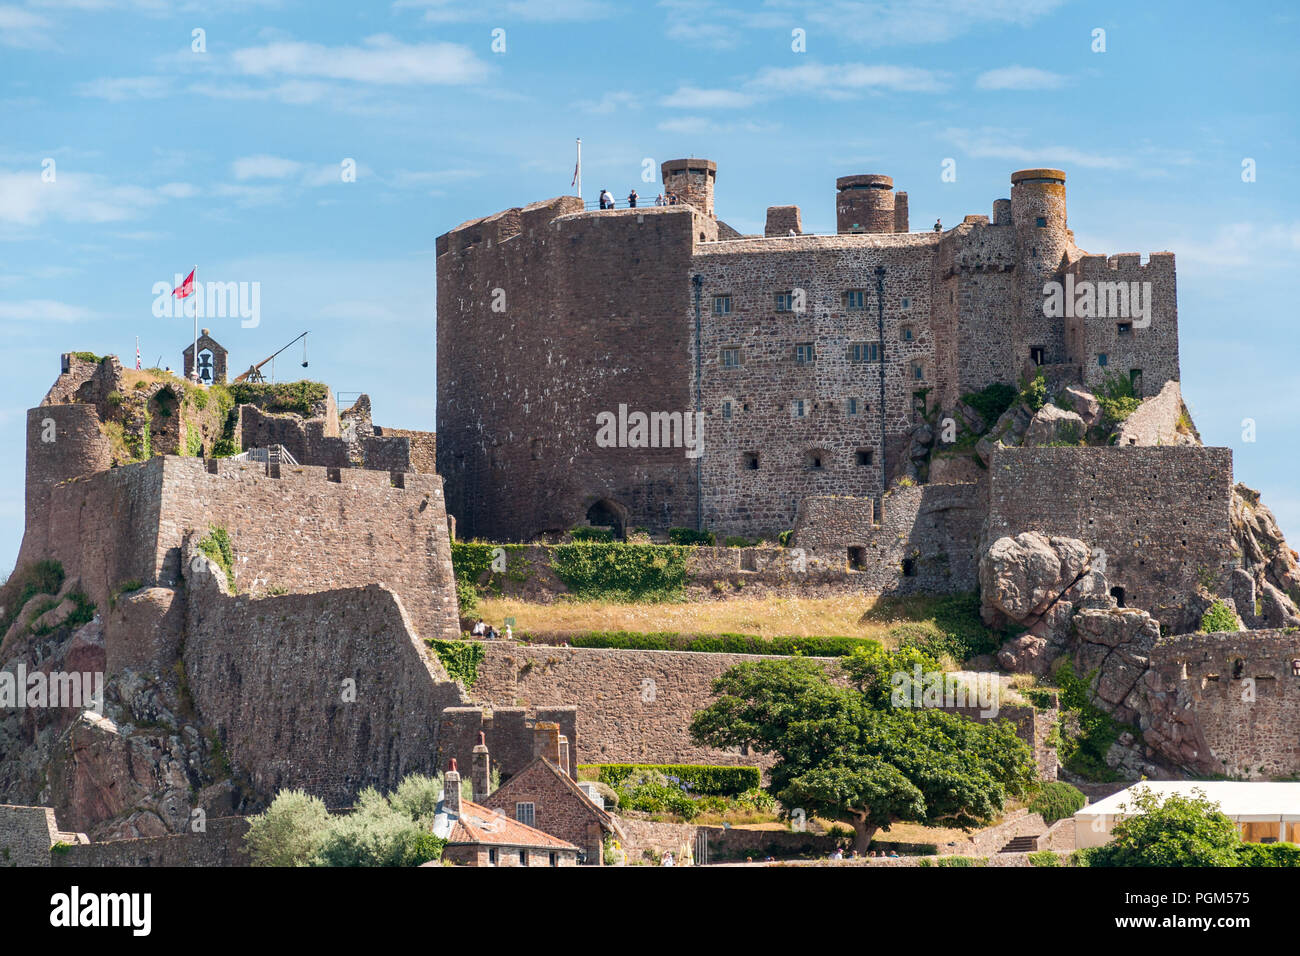 La fortezza medievale del Castello di Mont Orgueil siede sopra il villaggio di Gorey sull'isola di Jersey. L'immagine è stata presa su una luminosa giornata d'estate. Foto Stock